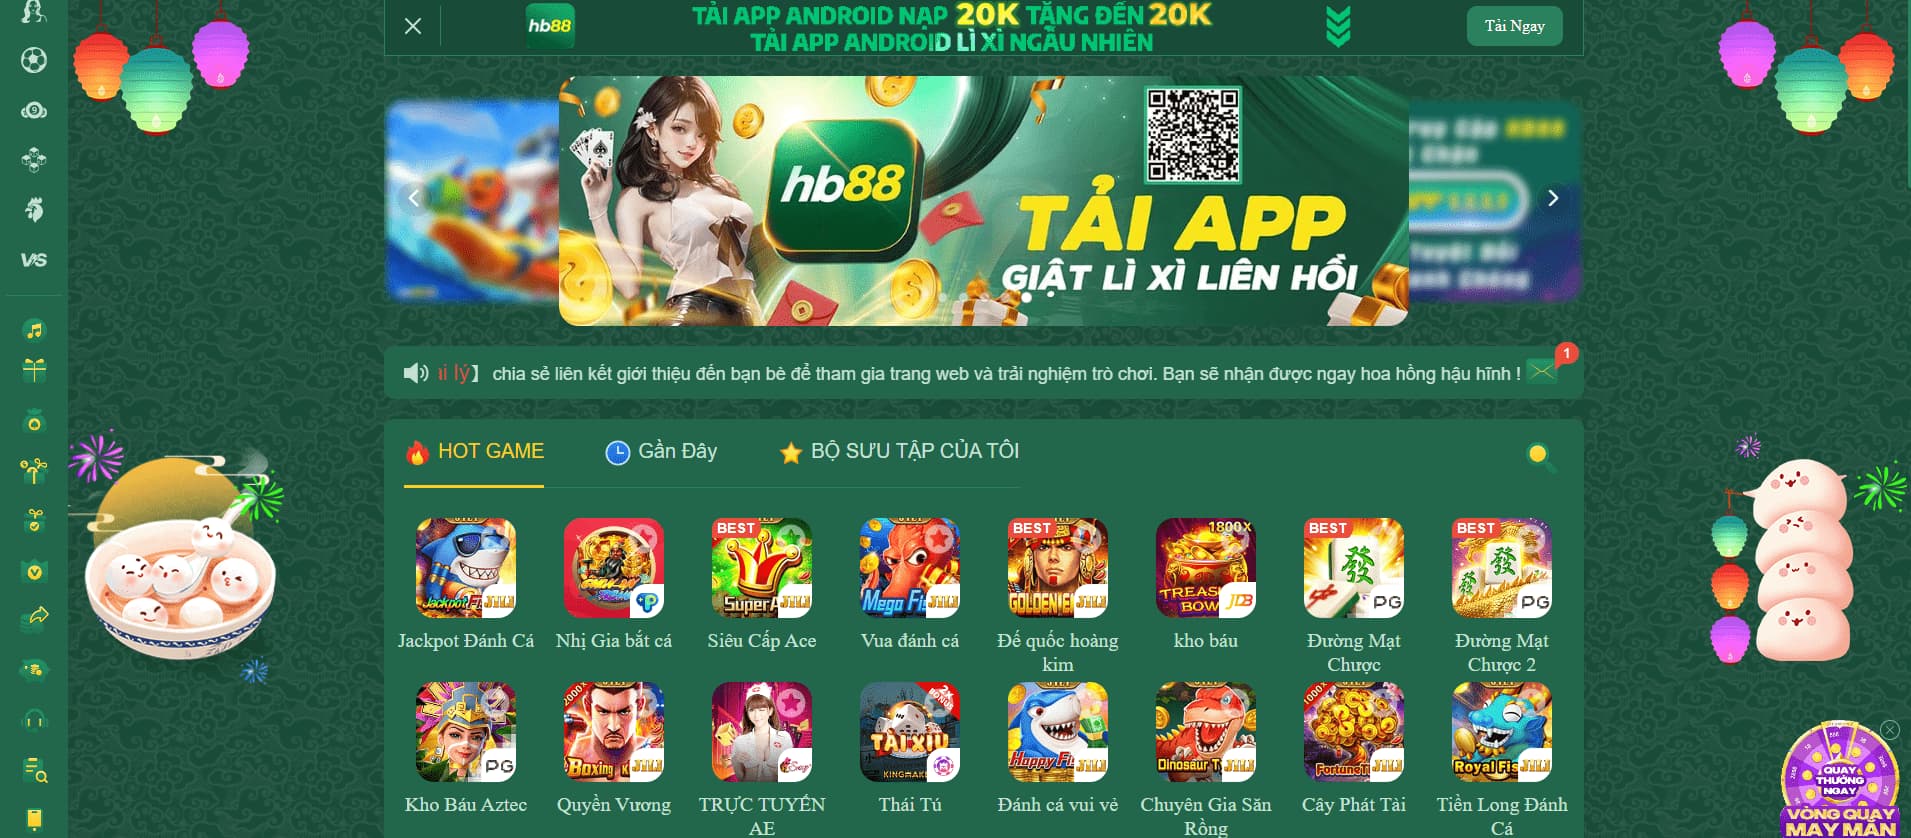 Hướng dẫn tải app Hb88 cho điện thoại iOS